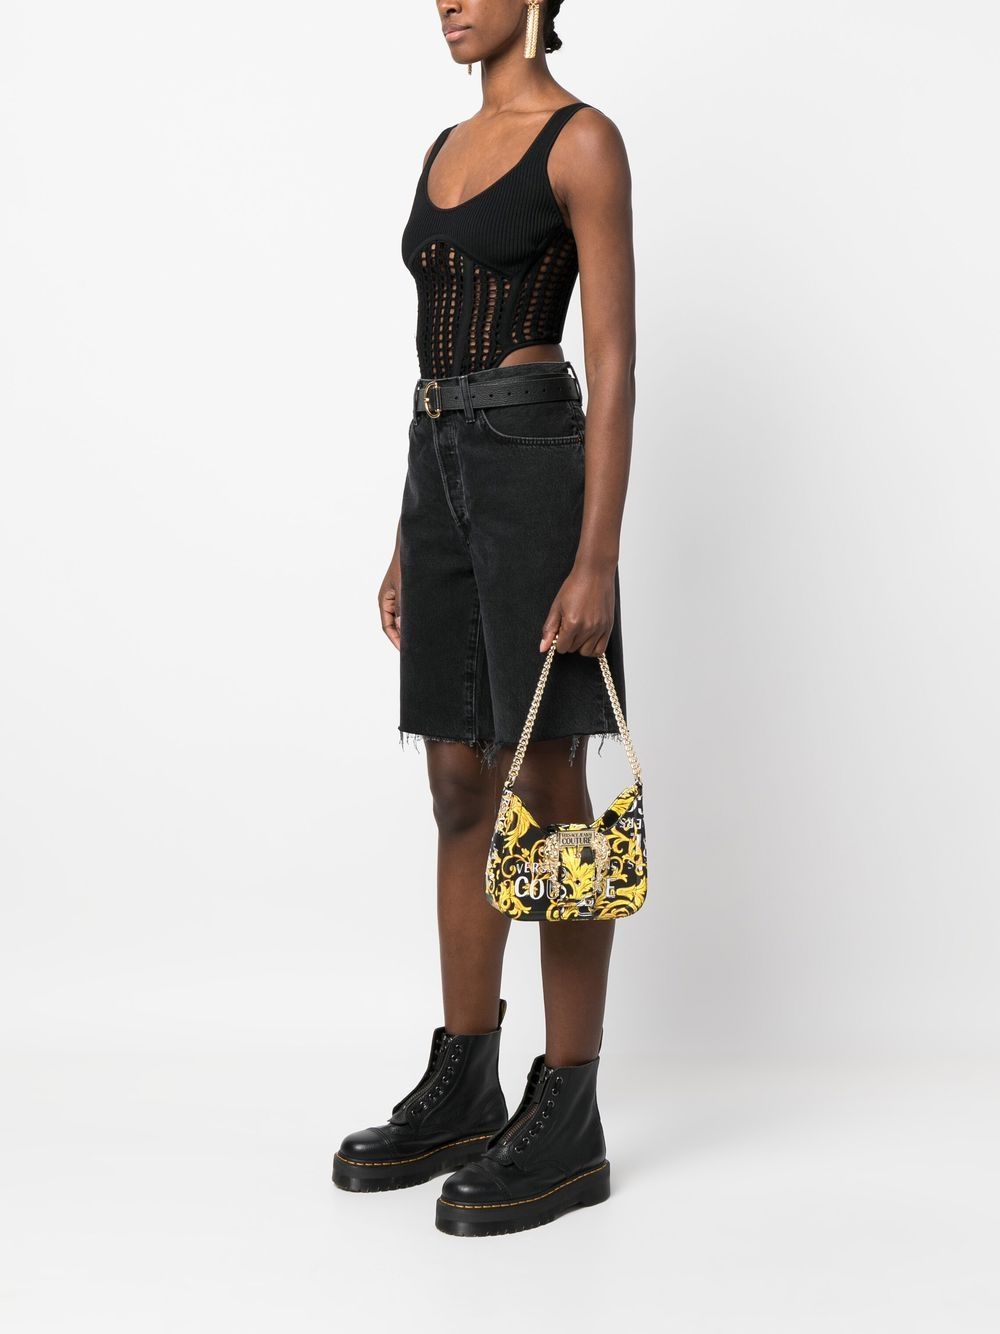 Buy Versace Jeans Couture Versace Jeans Couture Floral Printed Structured  Shoulder Bag at Redfynd